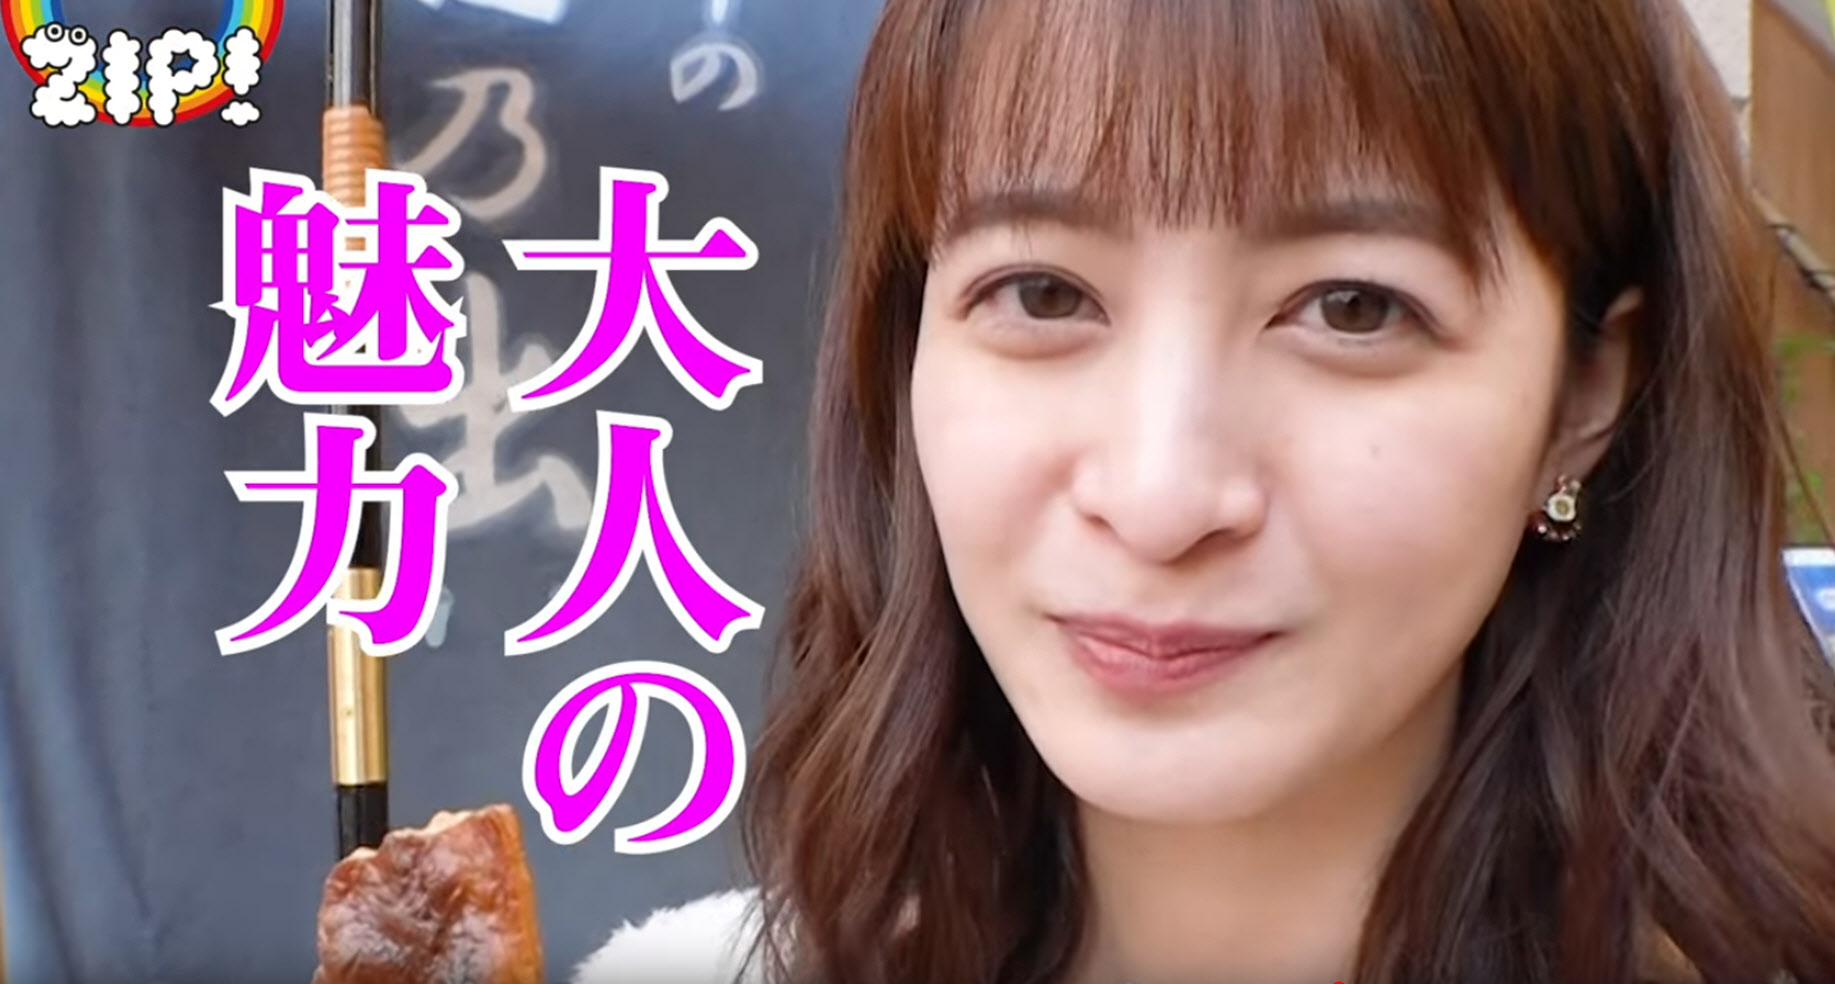 Senbei-Eating-Report-by-Arisa-Ushiro-後呂有紗-NTV-ZIP-2018-04.jpg